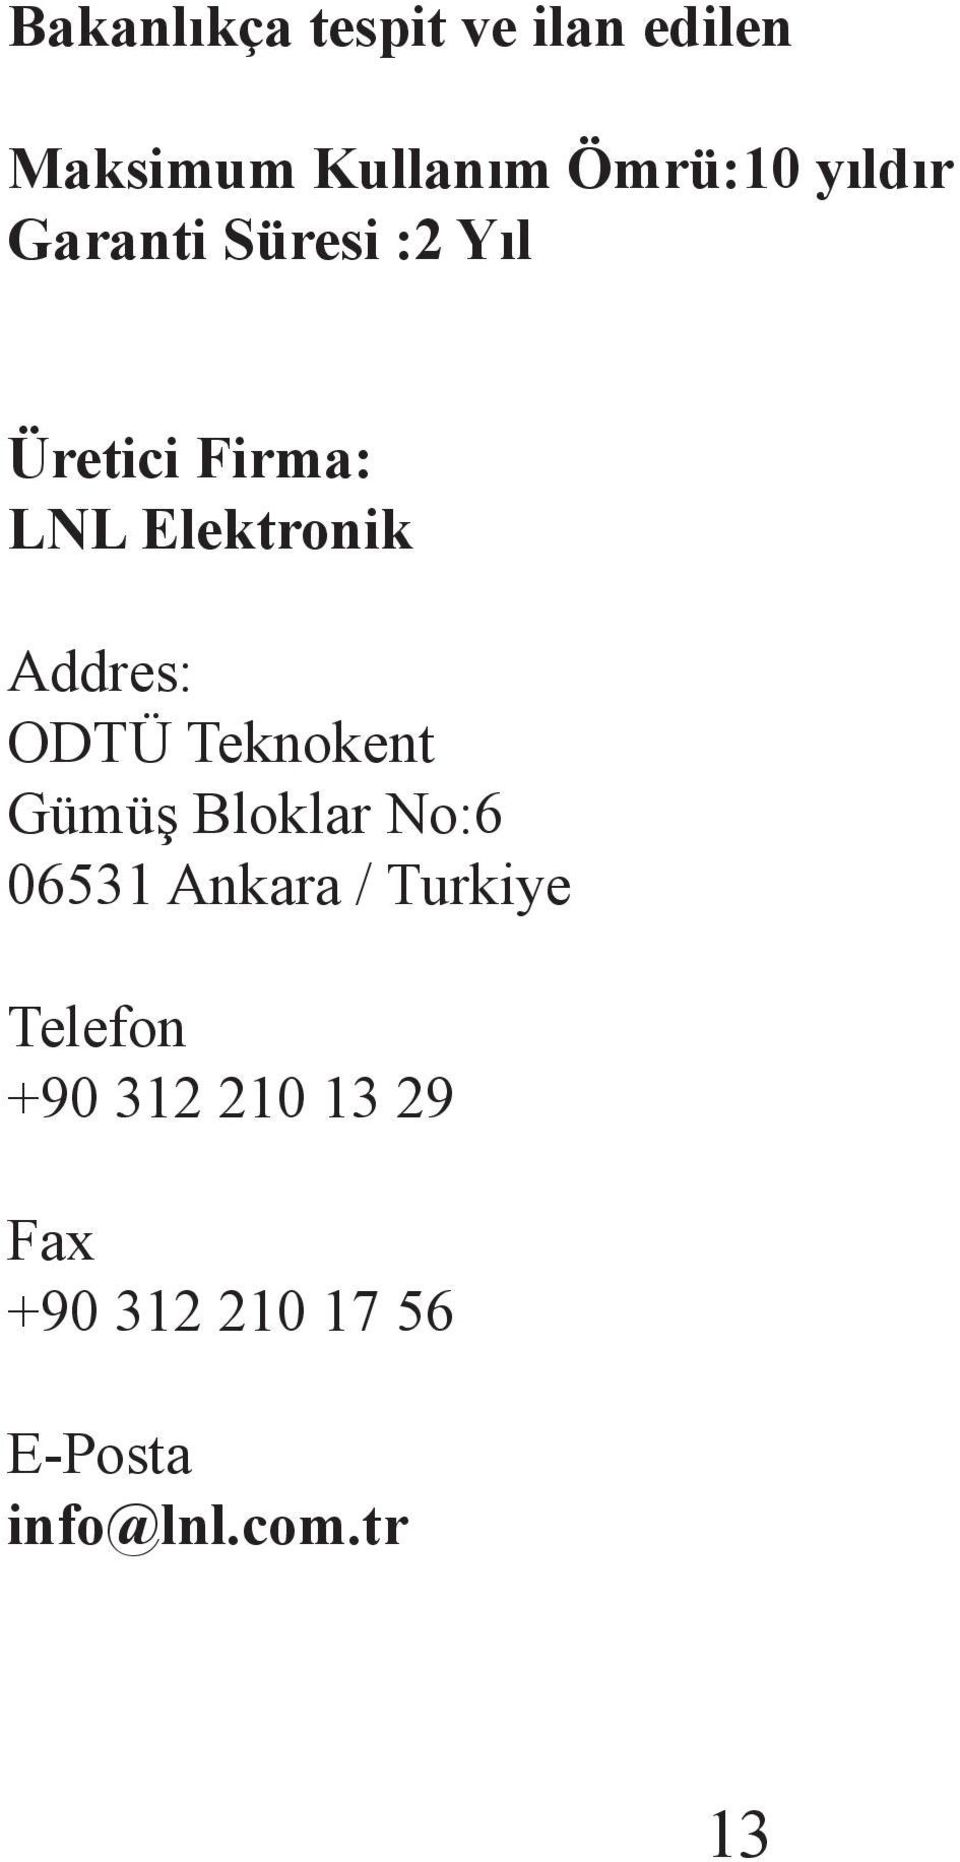 Addres: ODTÜ Teknokent Gümüş Bloklar No:6 06531 Ankara / Turkiye